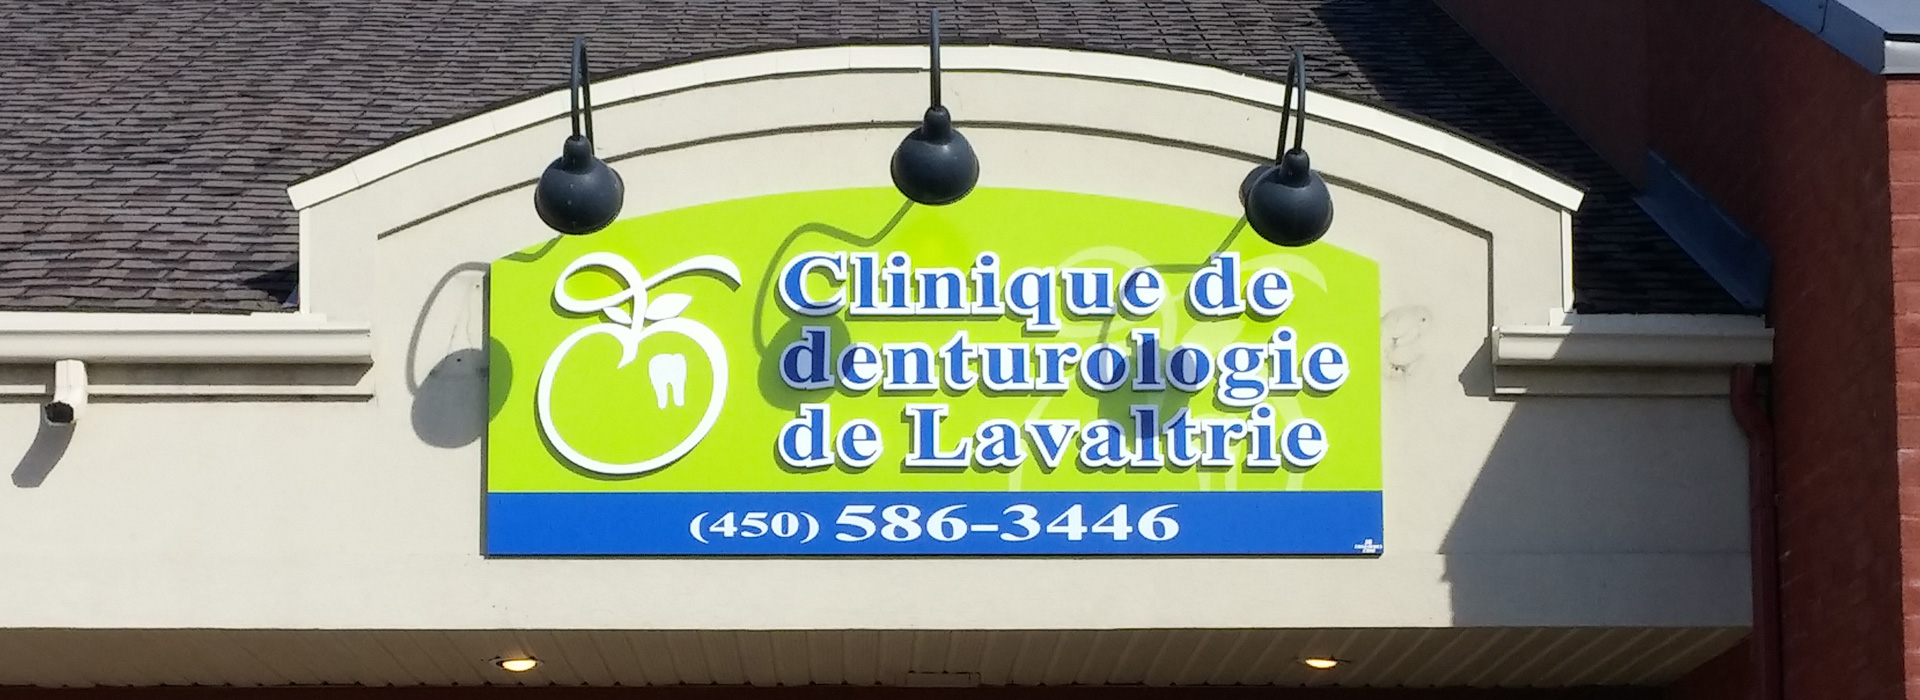 Clinique de denturologie de Lavaltrie | JB Enseignes création et fabrication d'enseignes